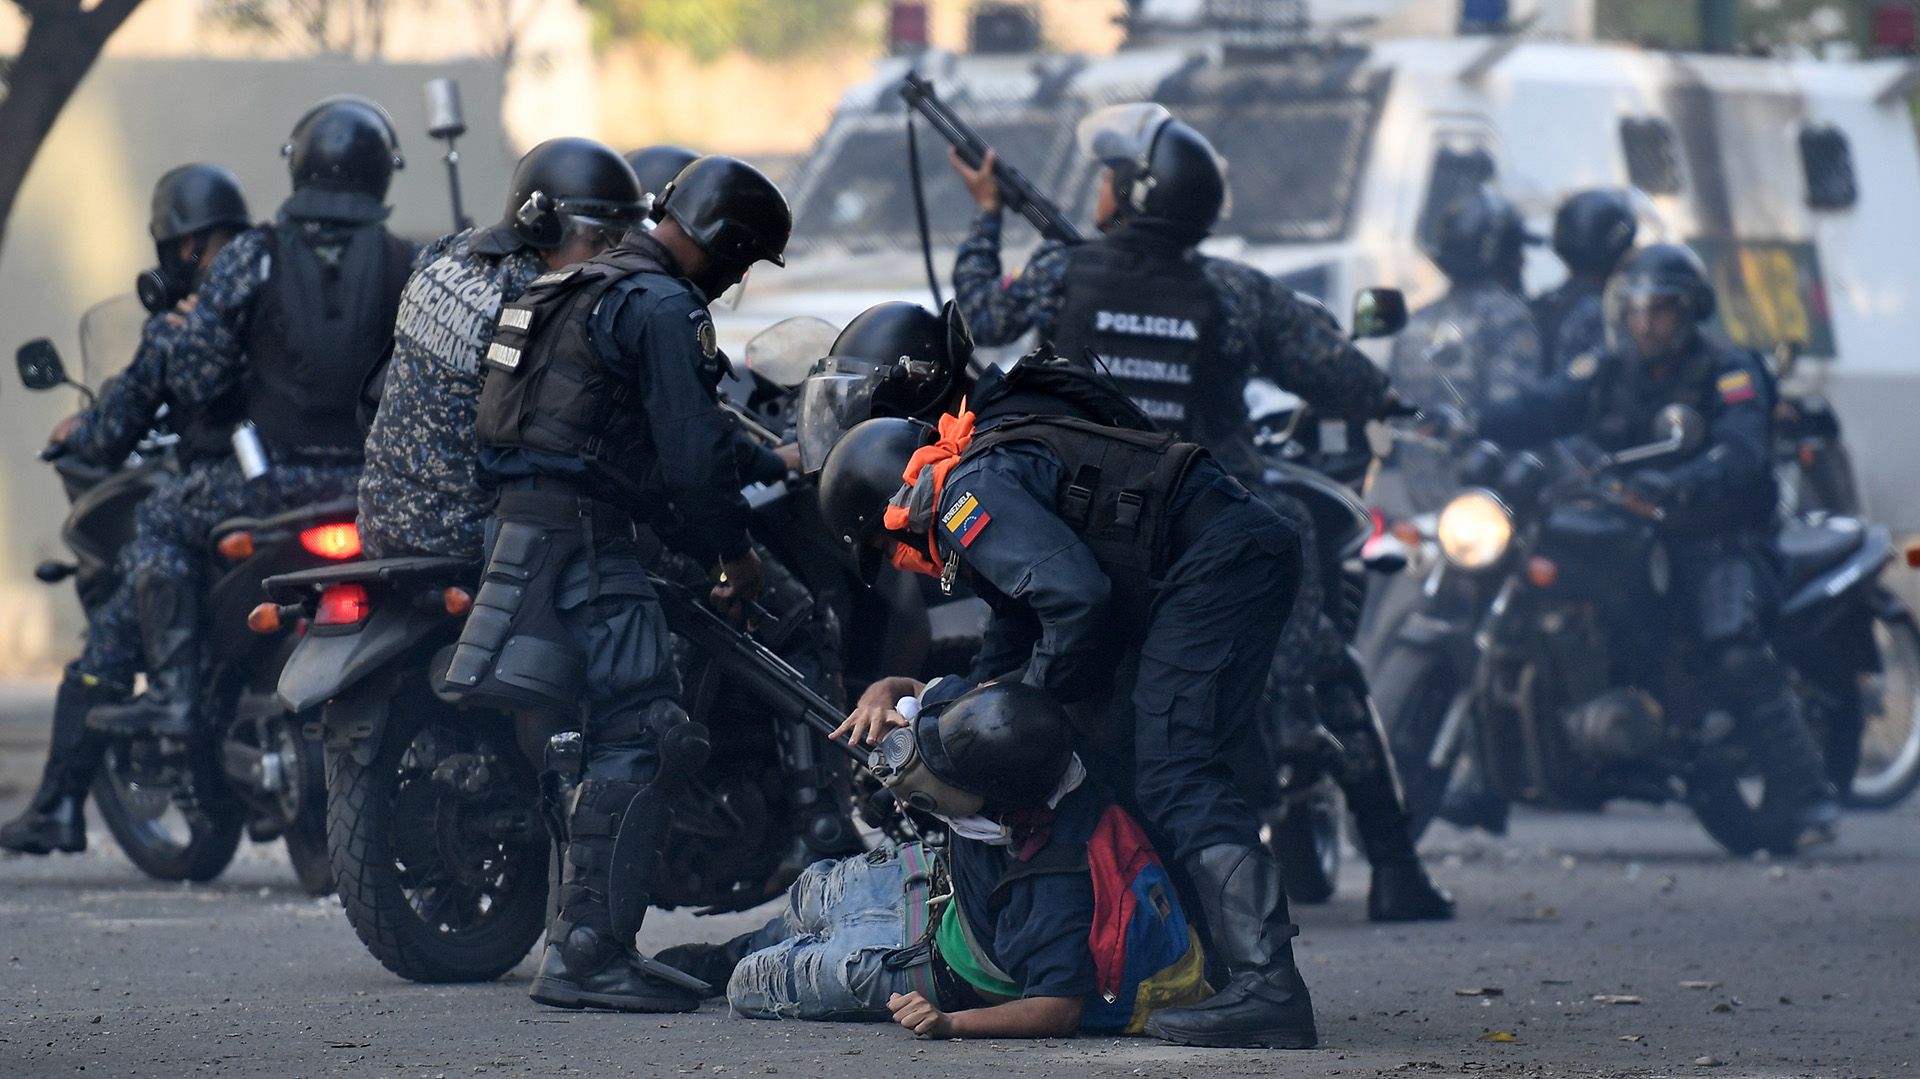 La Guardia Nacional Bolivariana reprimiendo a manifestantes en una marcha en Venezuela (Photo by Federico PARRA / AFP)